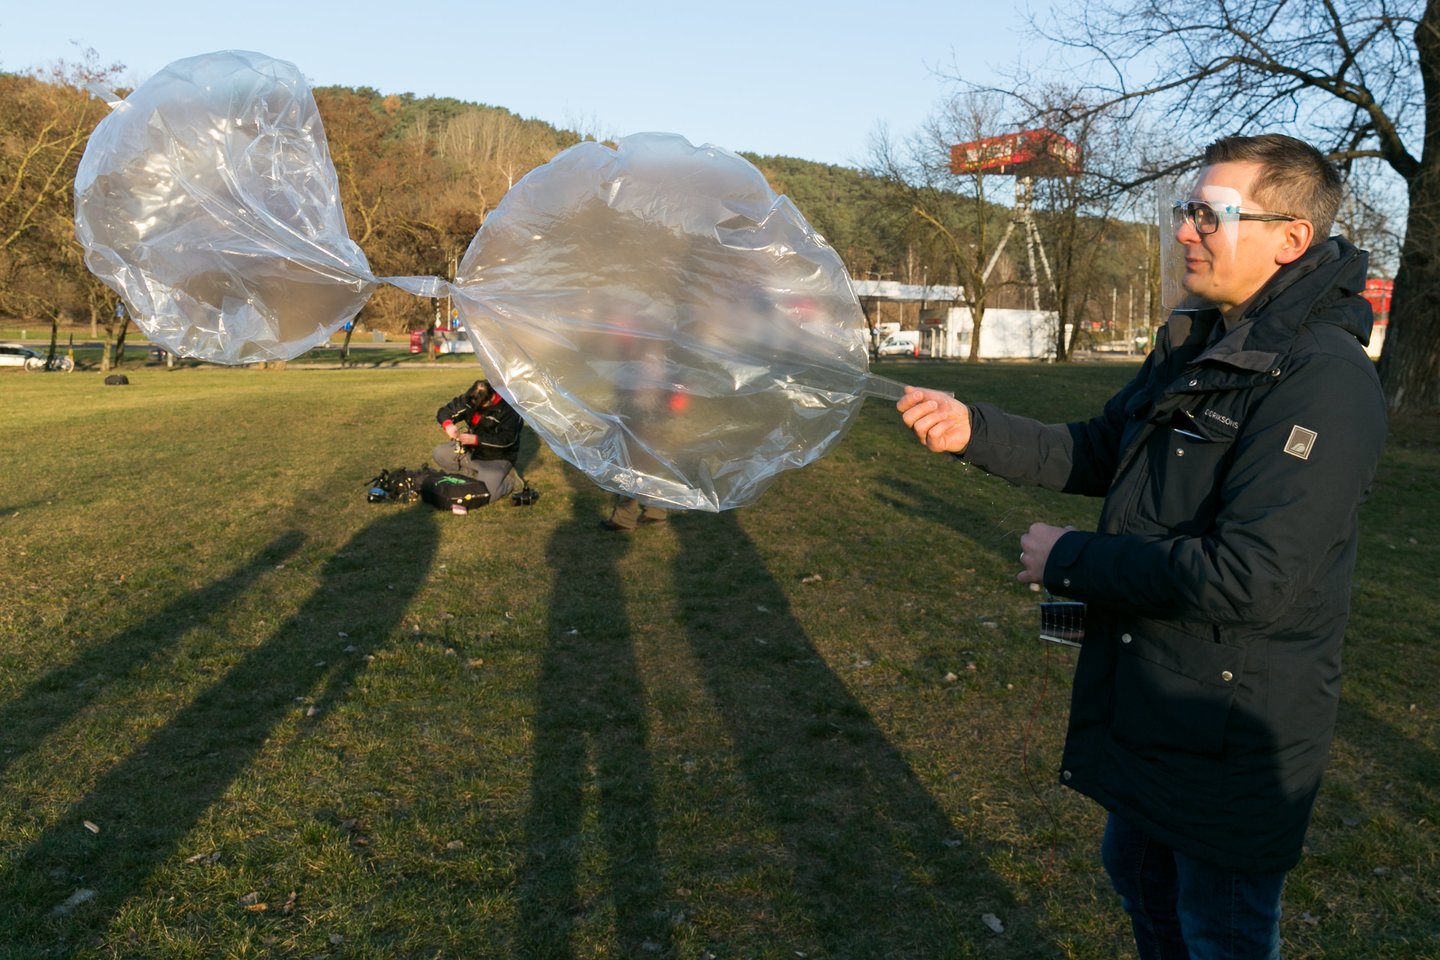  Šaltoką gruodžio rytą iš pievelės šalia Geležinio vilko gatvės sėkmingai pakilo balionų sistema LKB-1, gabenanti „Arduino“ kompiuterį su radijo švyturėliu ir saulės baterijų moduliu.<br> T. Bauro nuotr.